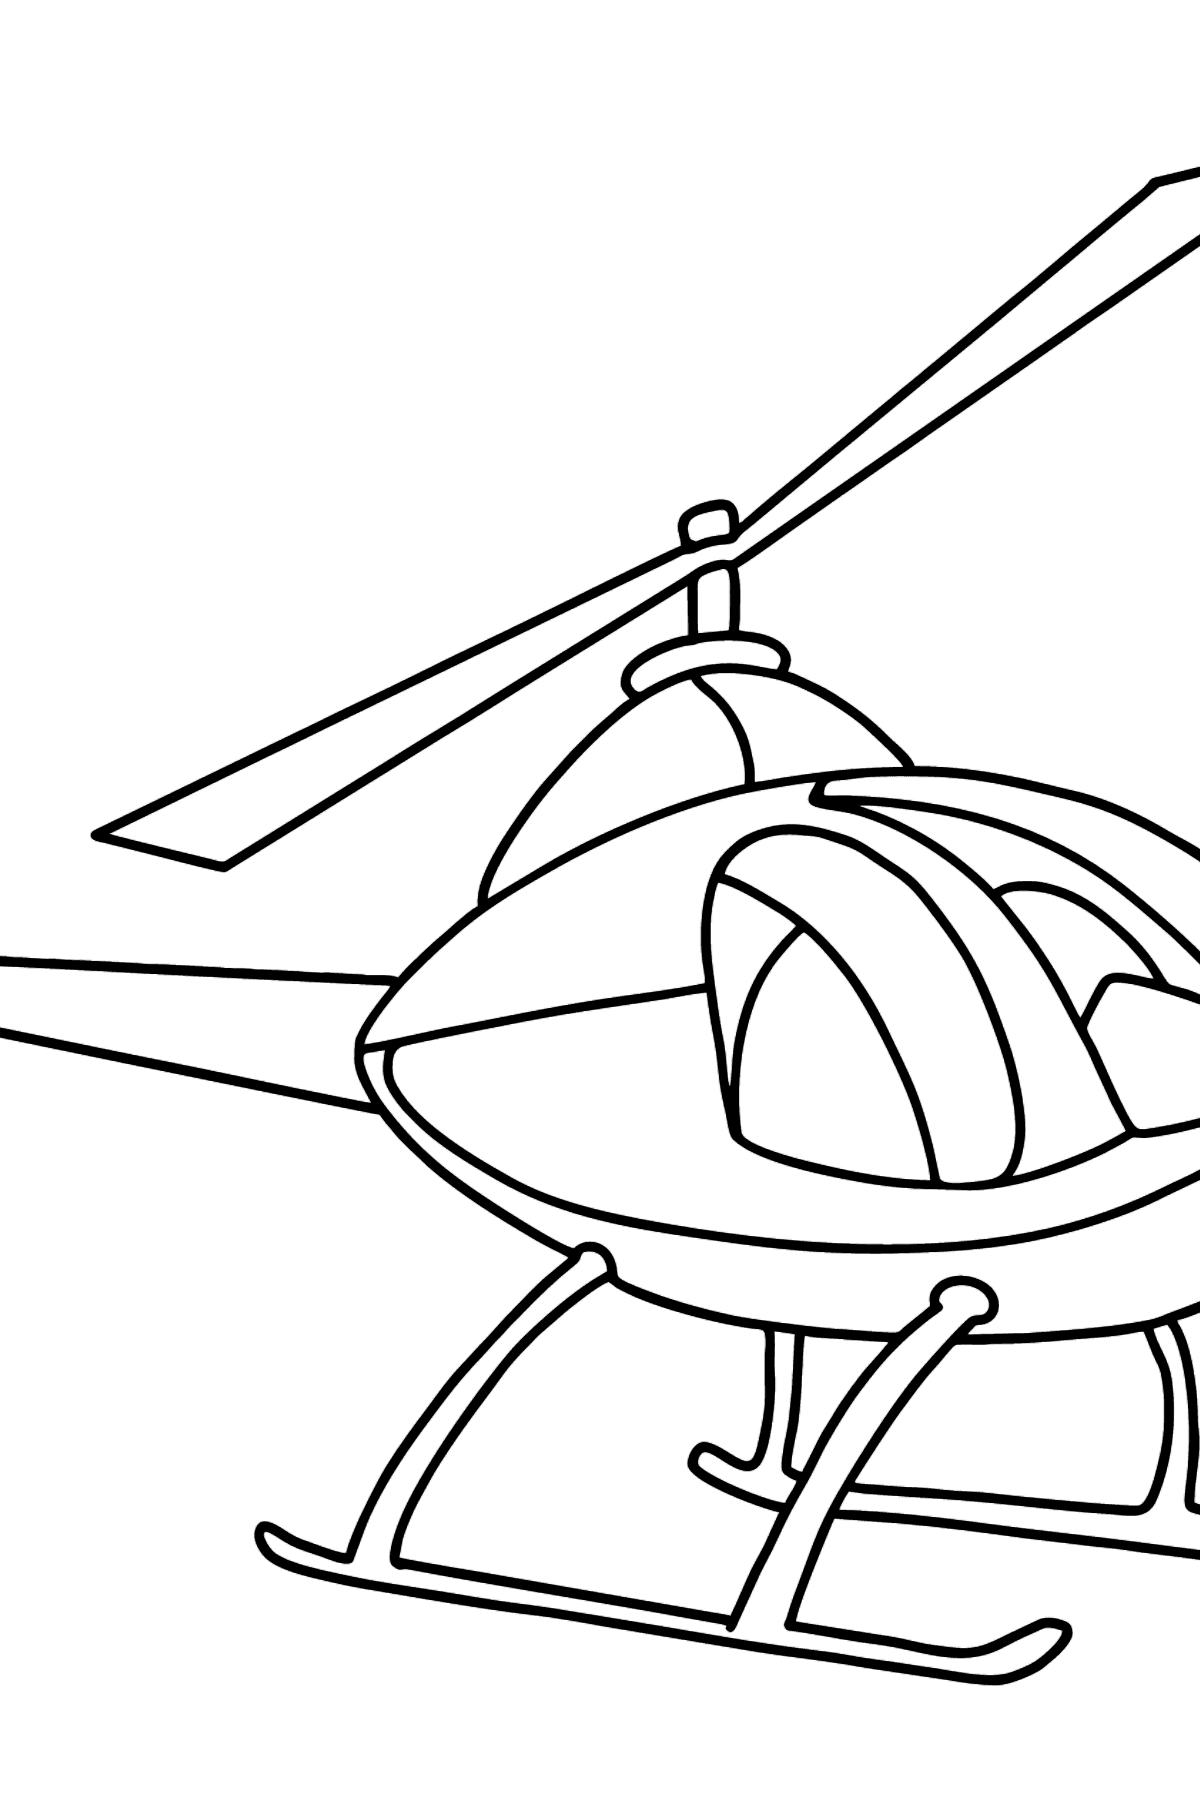 Tegning til fargelegging helikopter for barn - Tegninger til fargelegging for barn